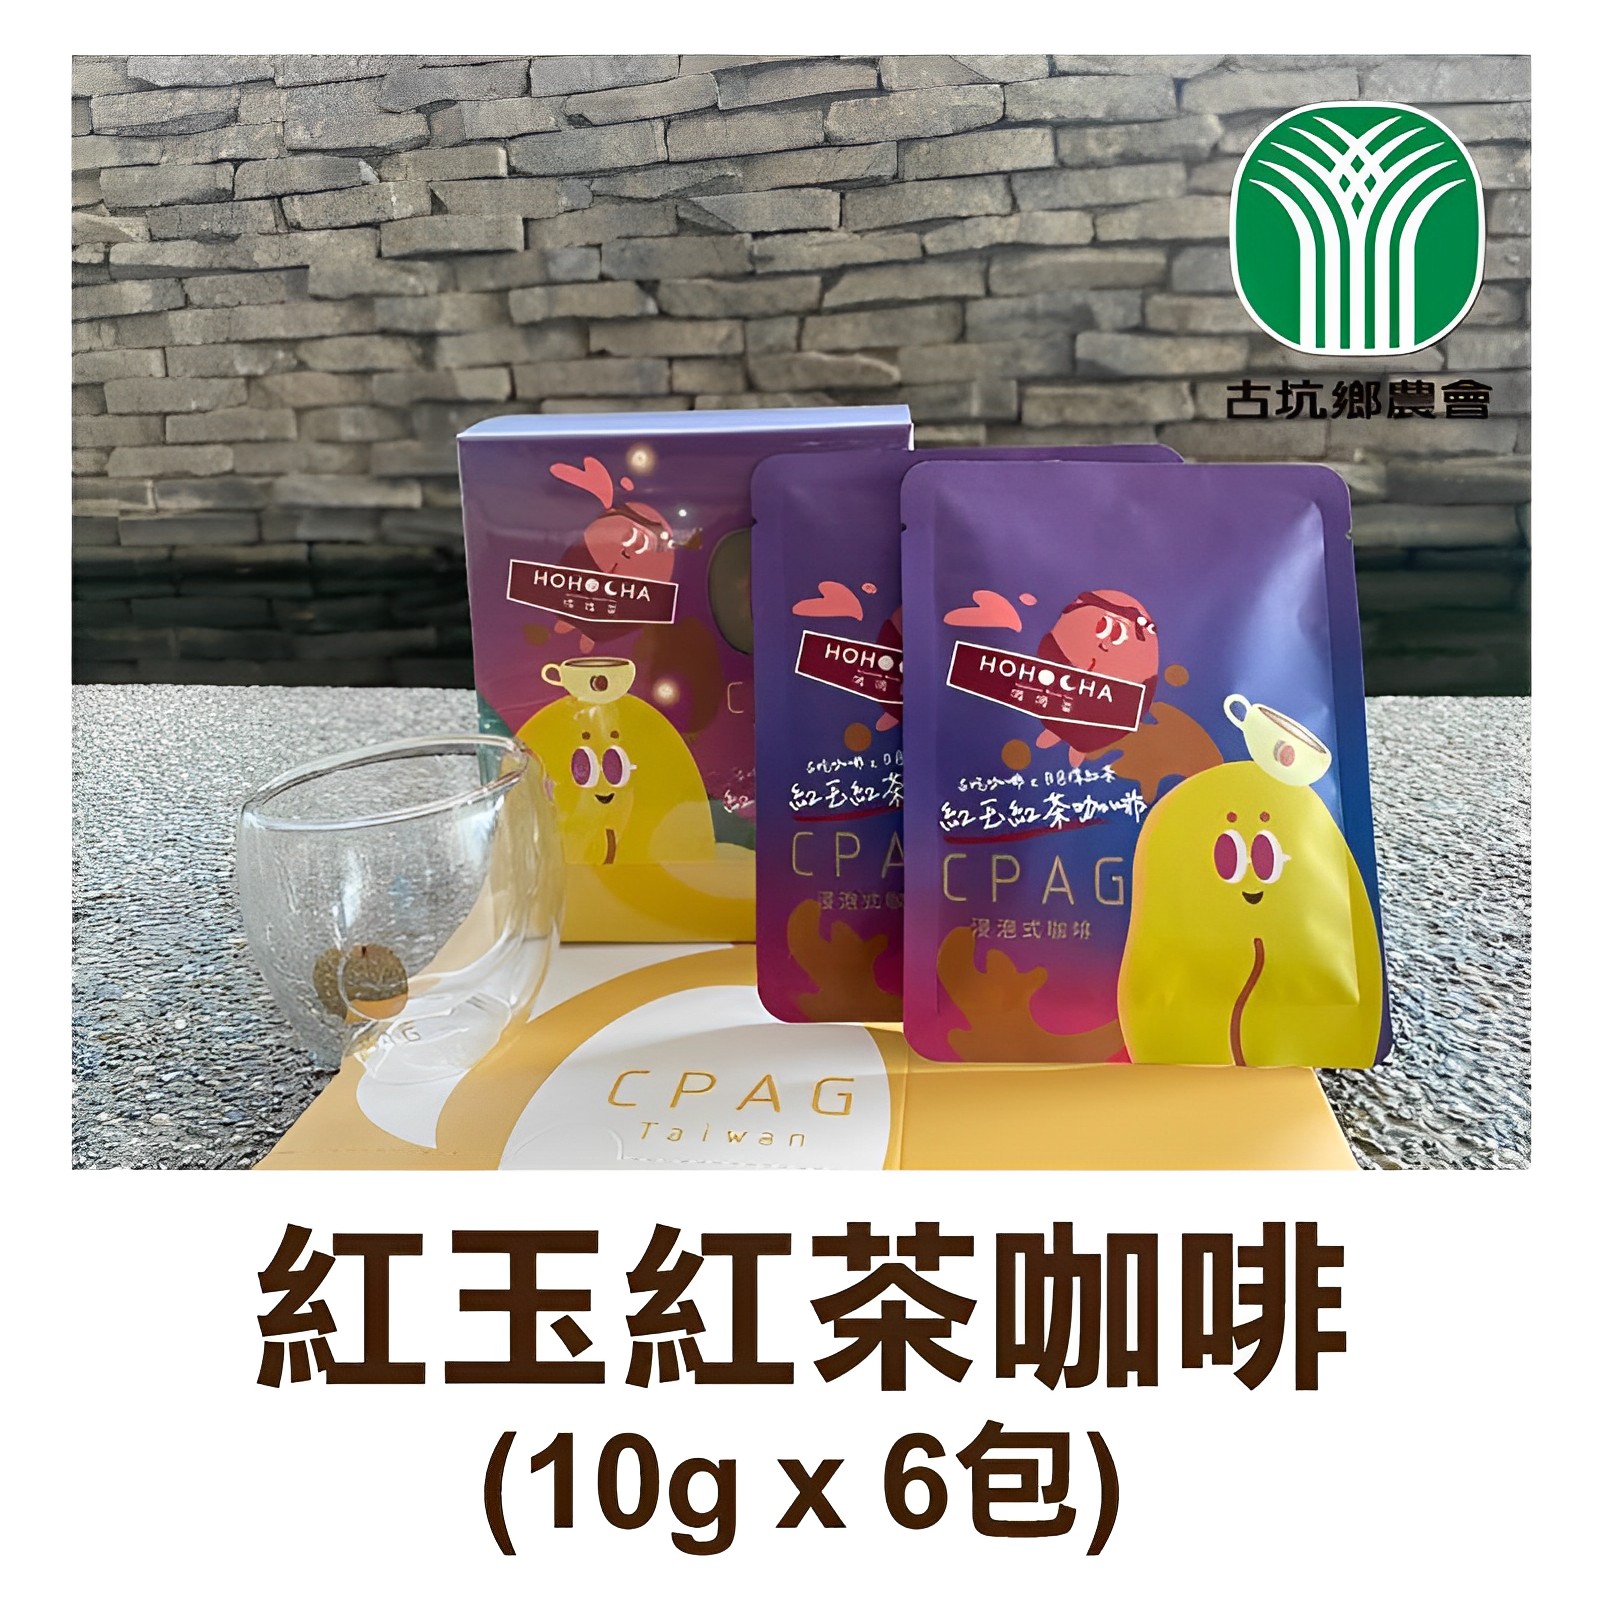 【古坑鄉農會】紅玉紅茶咖啡(10g*6包)